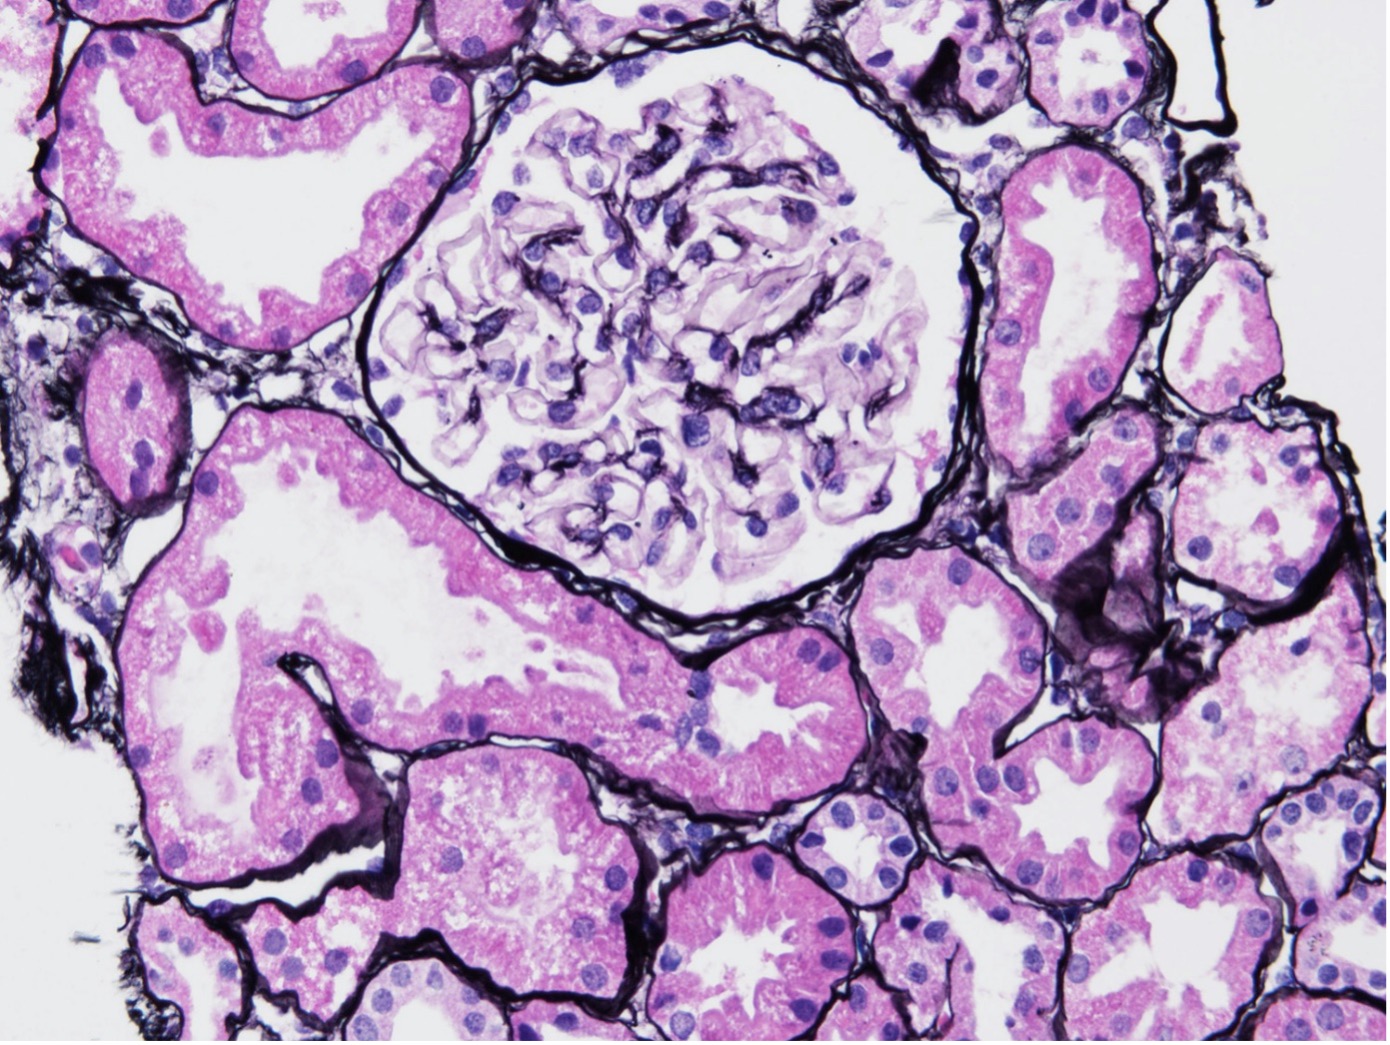 ループス腎炎クラス1患者の腎臓スライドサンプルの拡大画像